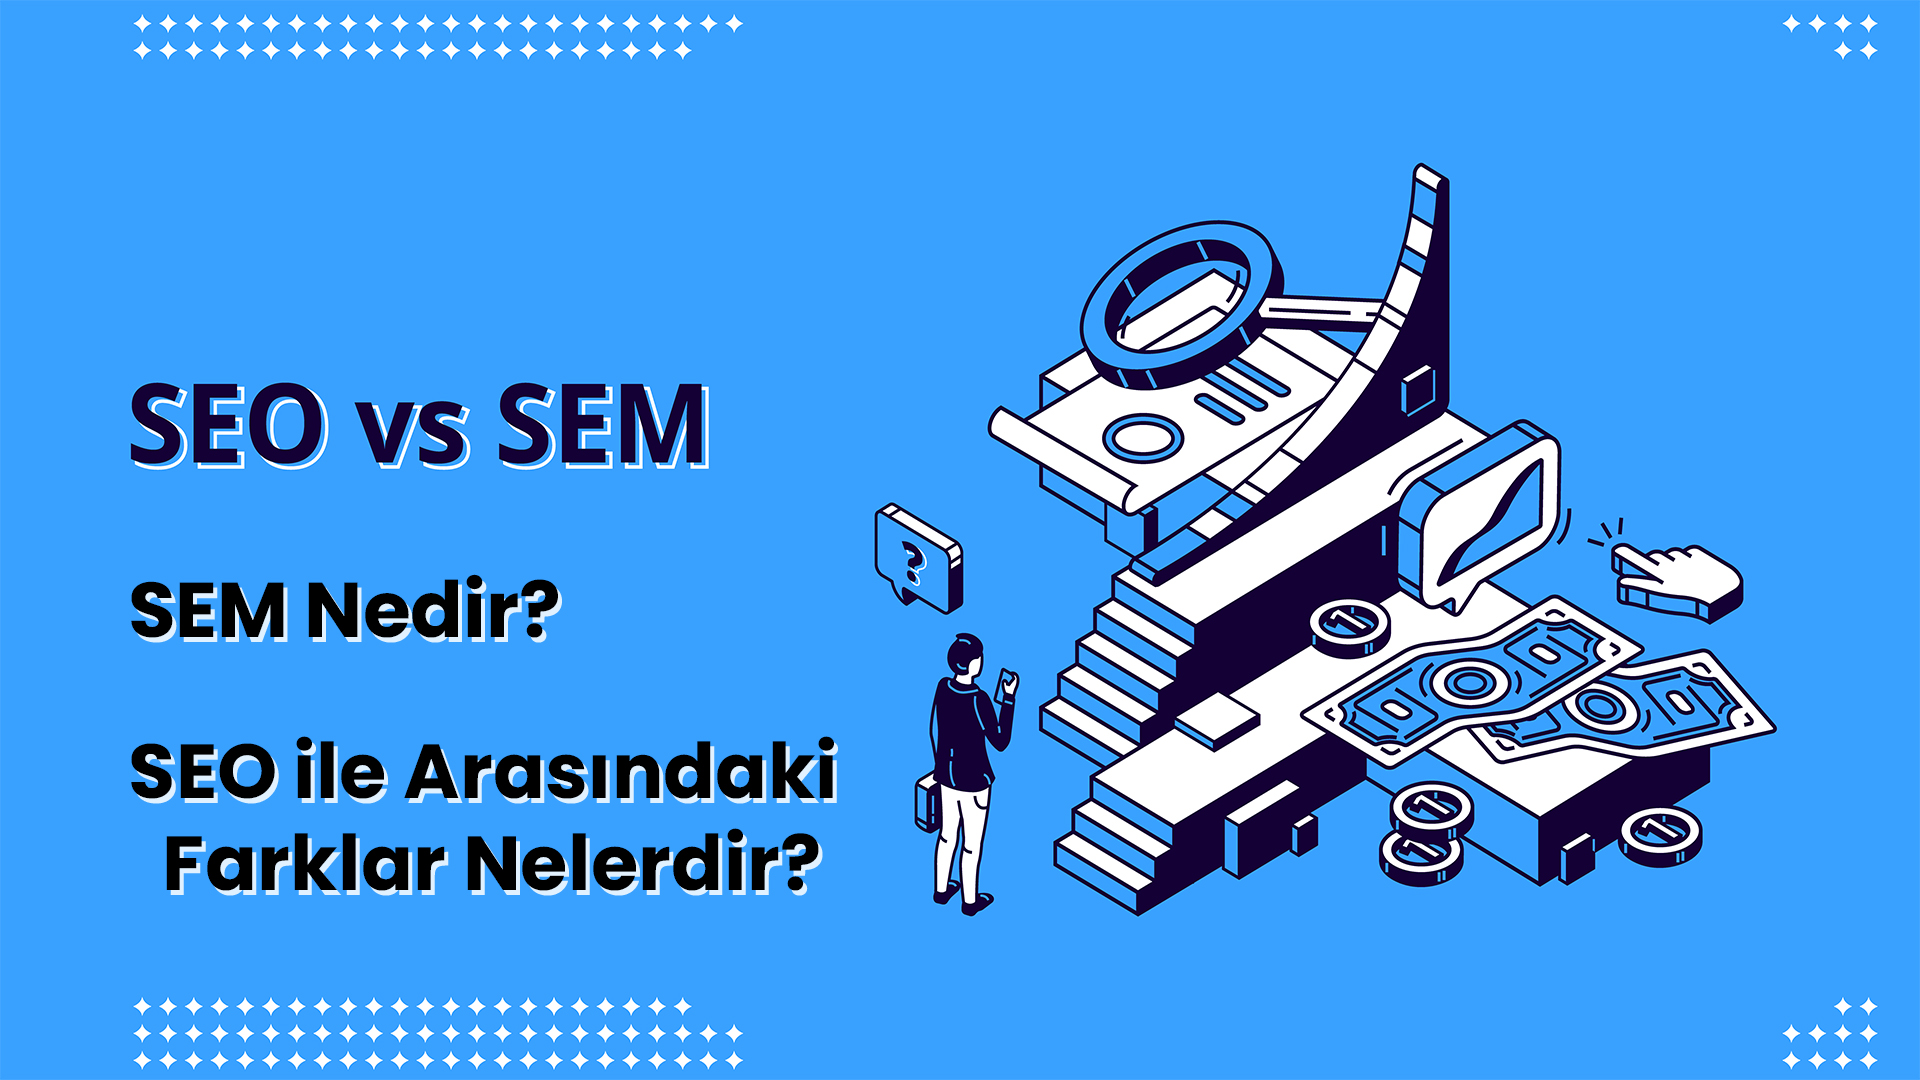 SEM ( Search Engine Marketing ) Nedir? 